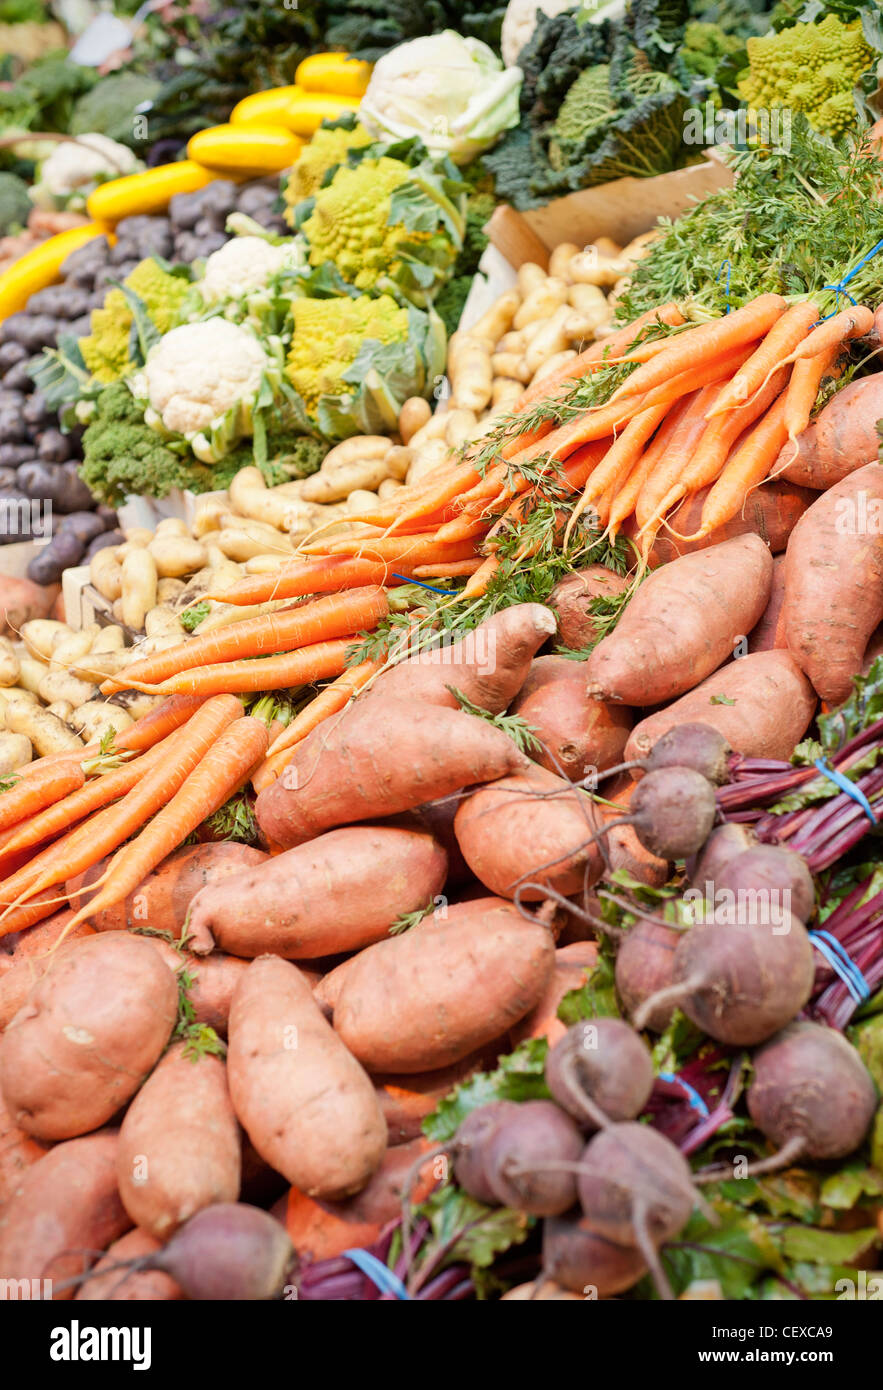 Ampia selezione Di Verdure Fresche in una stalla di mercato Foto Stock